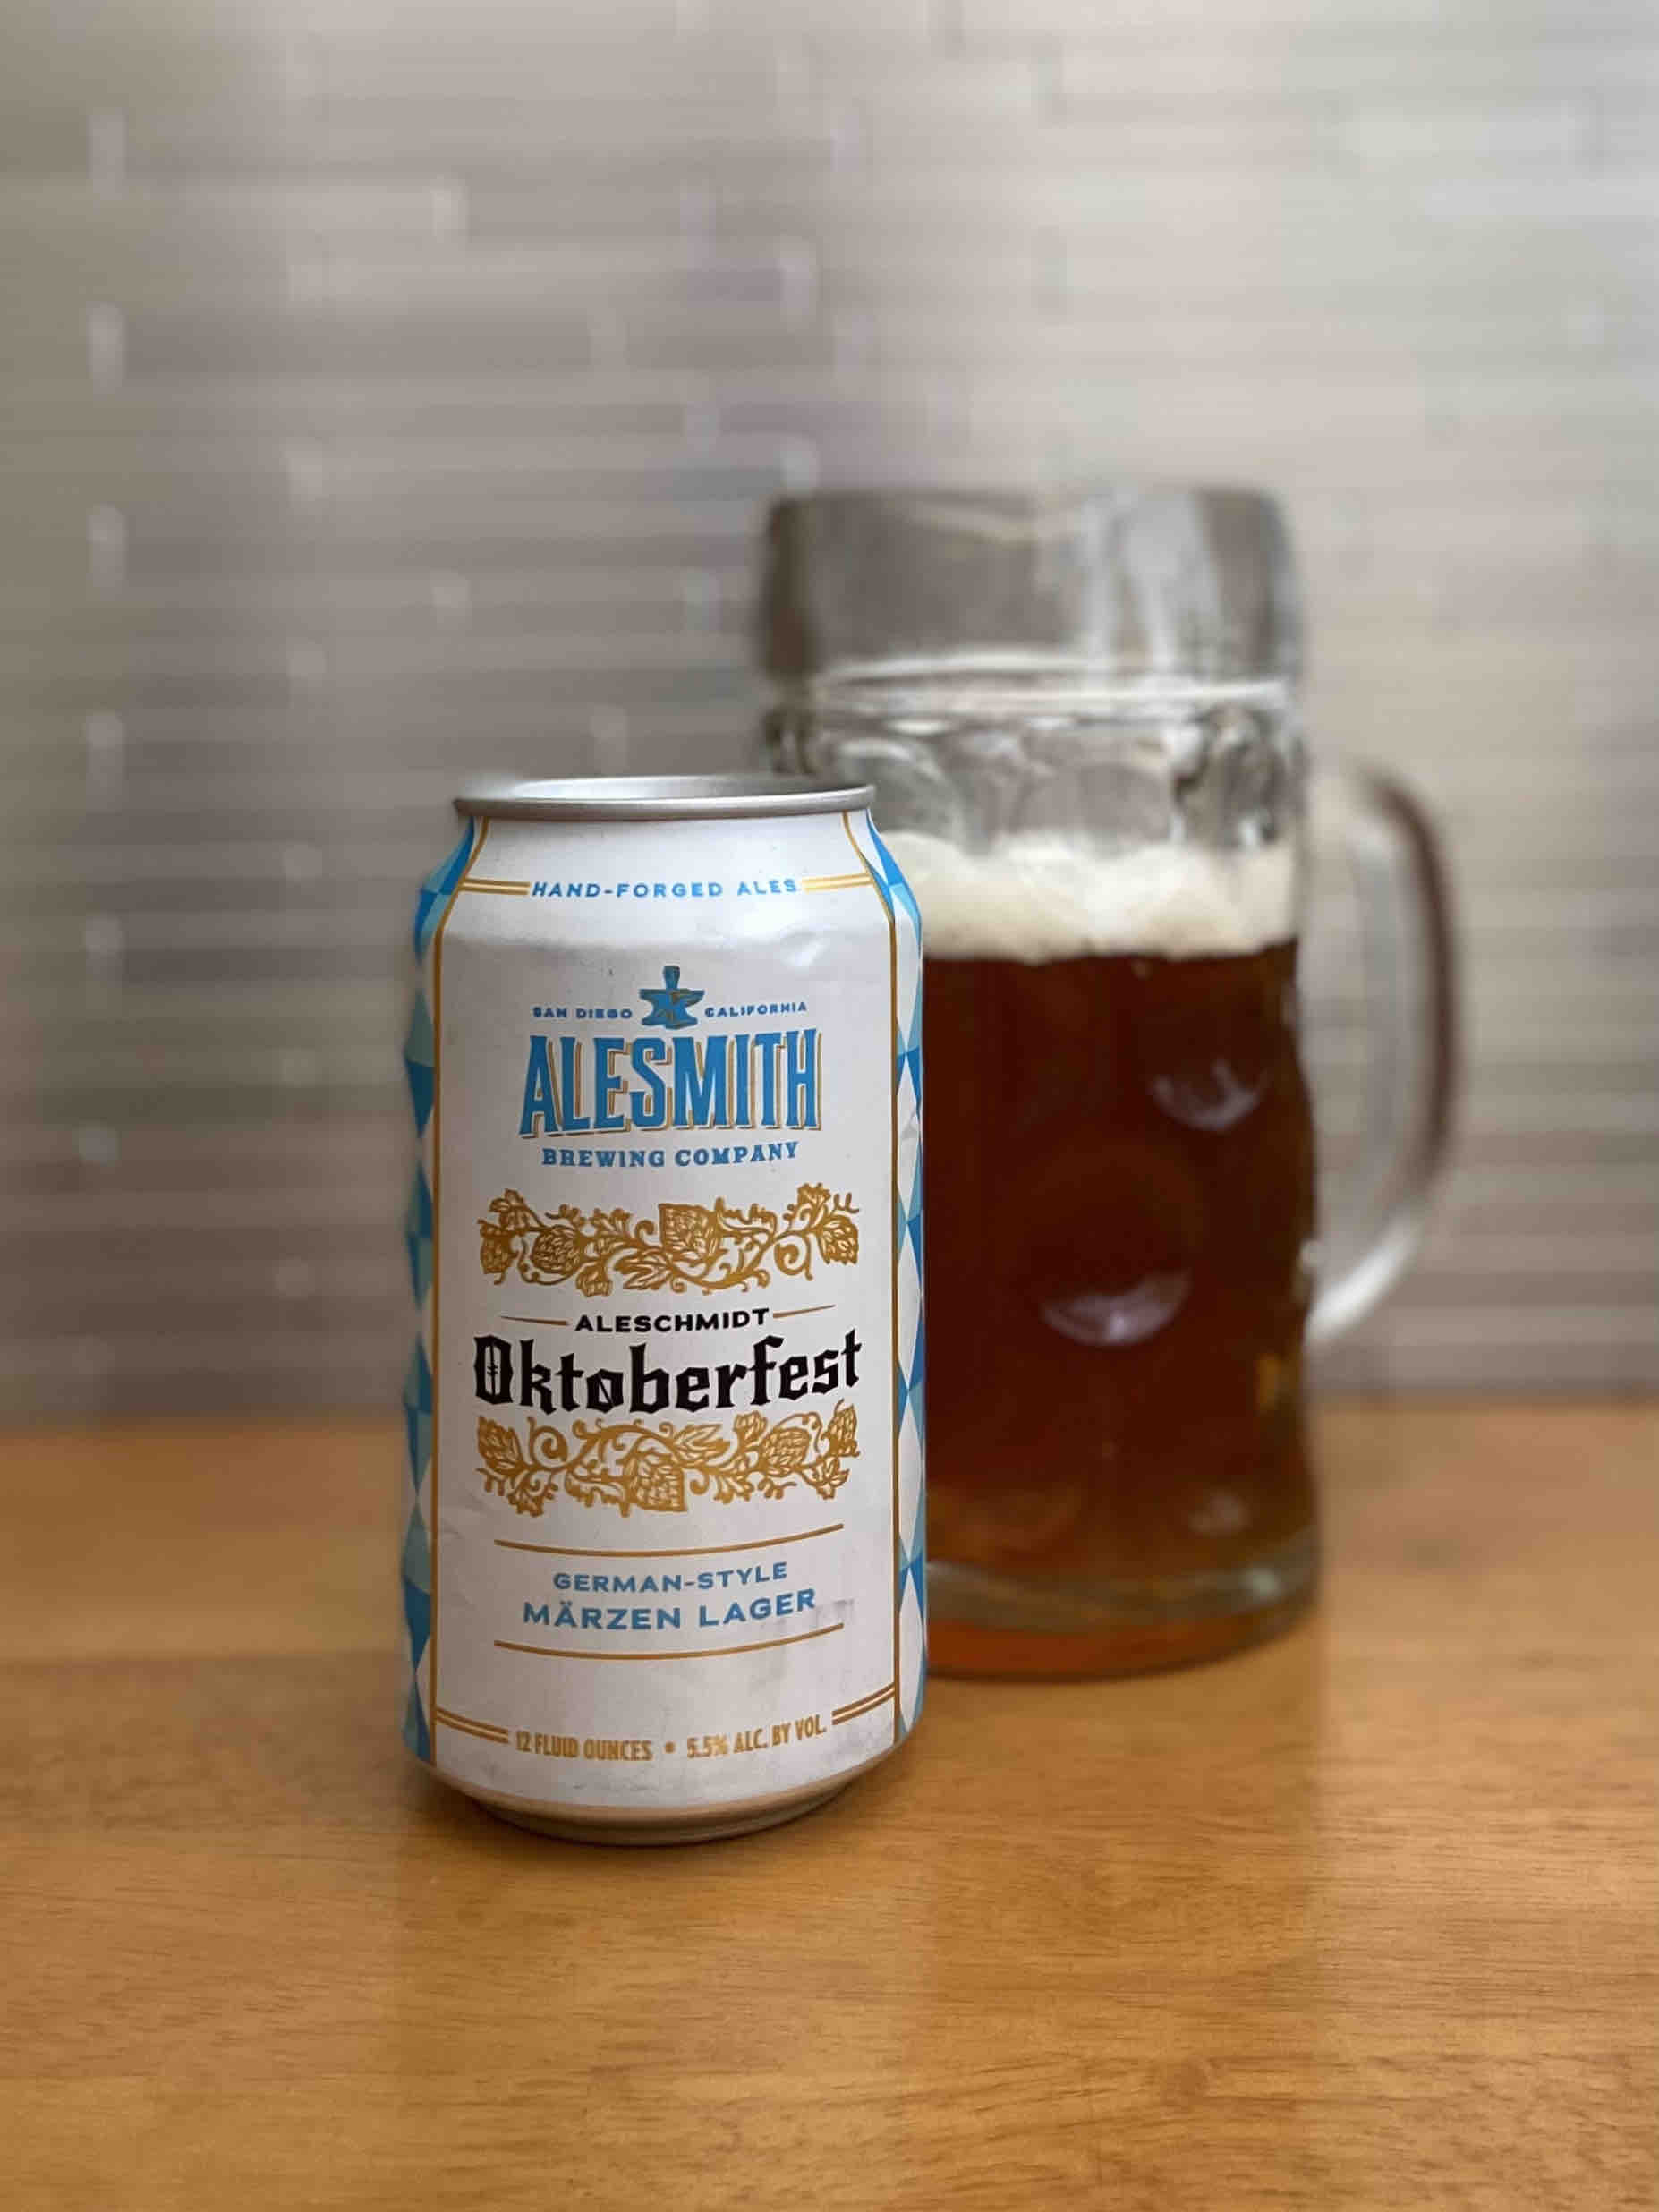 AleSmith Brewing releases AleSchmidt Oktoberfest Märzen in 12oz cans.